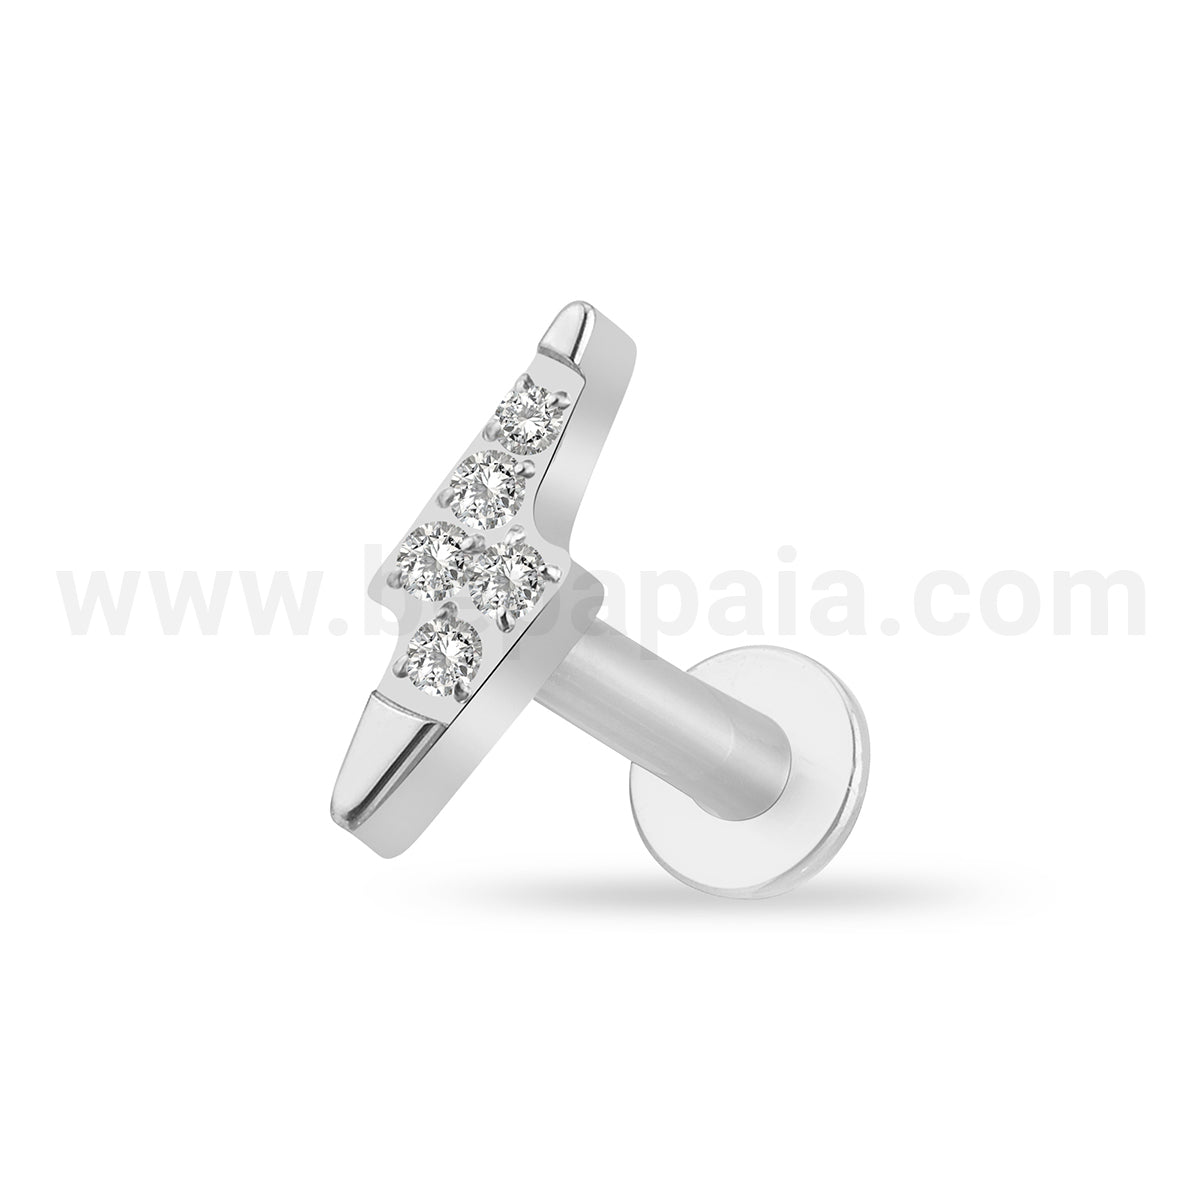 Titanium glam ear piercing with gems